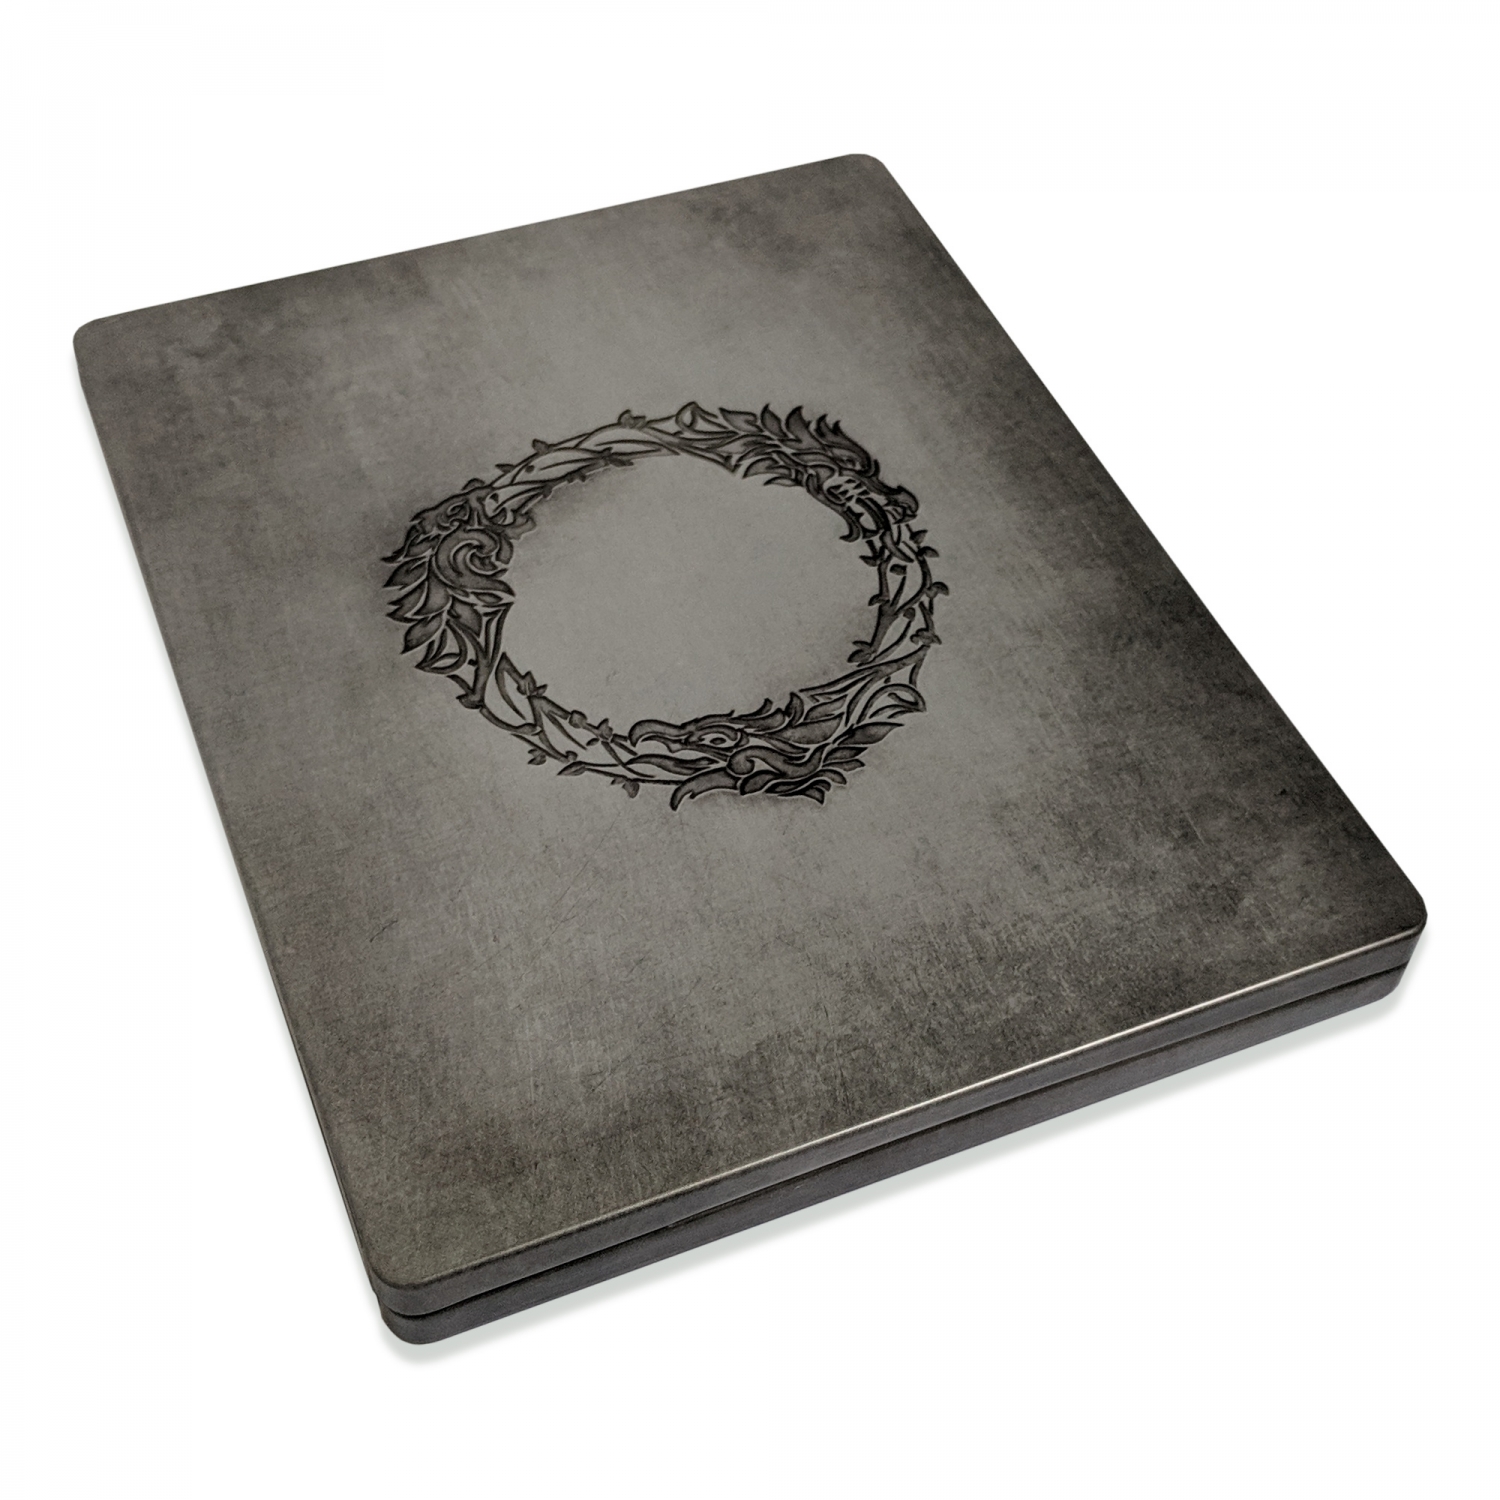 The Elder Scrolls Online Summerset Collectors Edition Steelbook